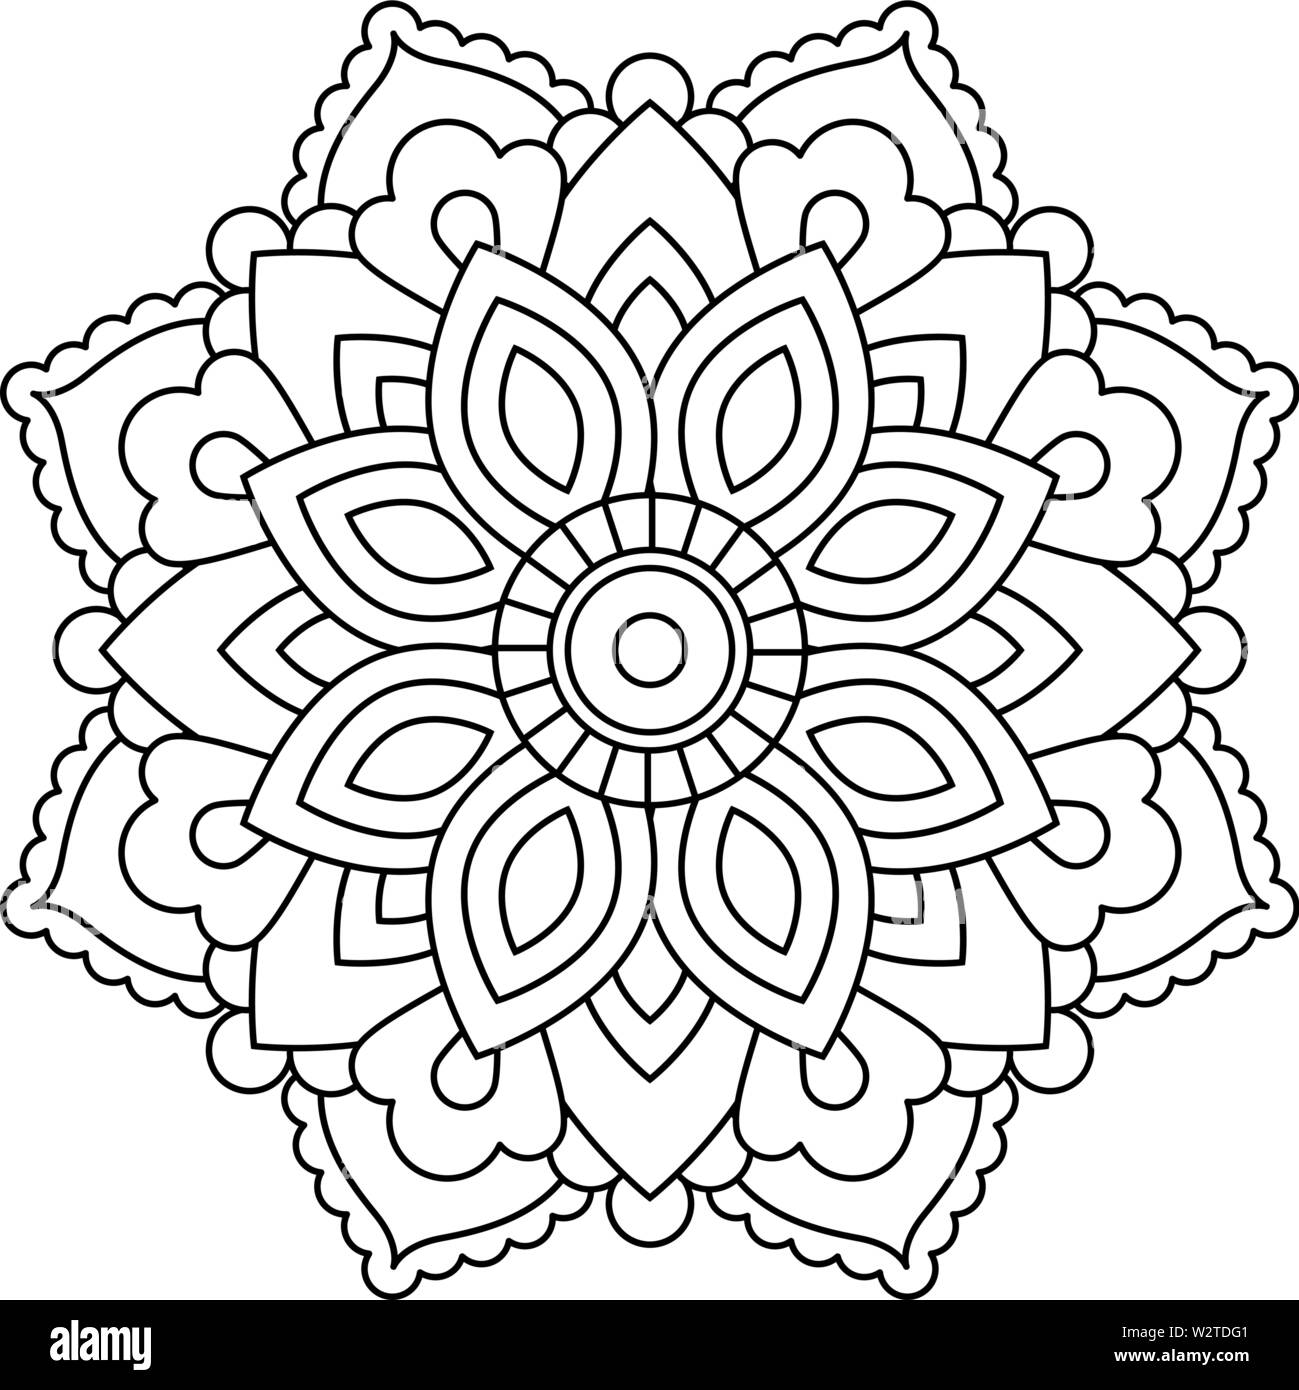 Mandala in ethnischen orientalischen Stil. Dekorative vintage Blume für Henna, Yoga, mehendi, Tattoo, Malbuch Seite. Zentangle inspirierten Stil. Stock Vektor